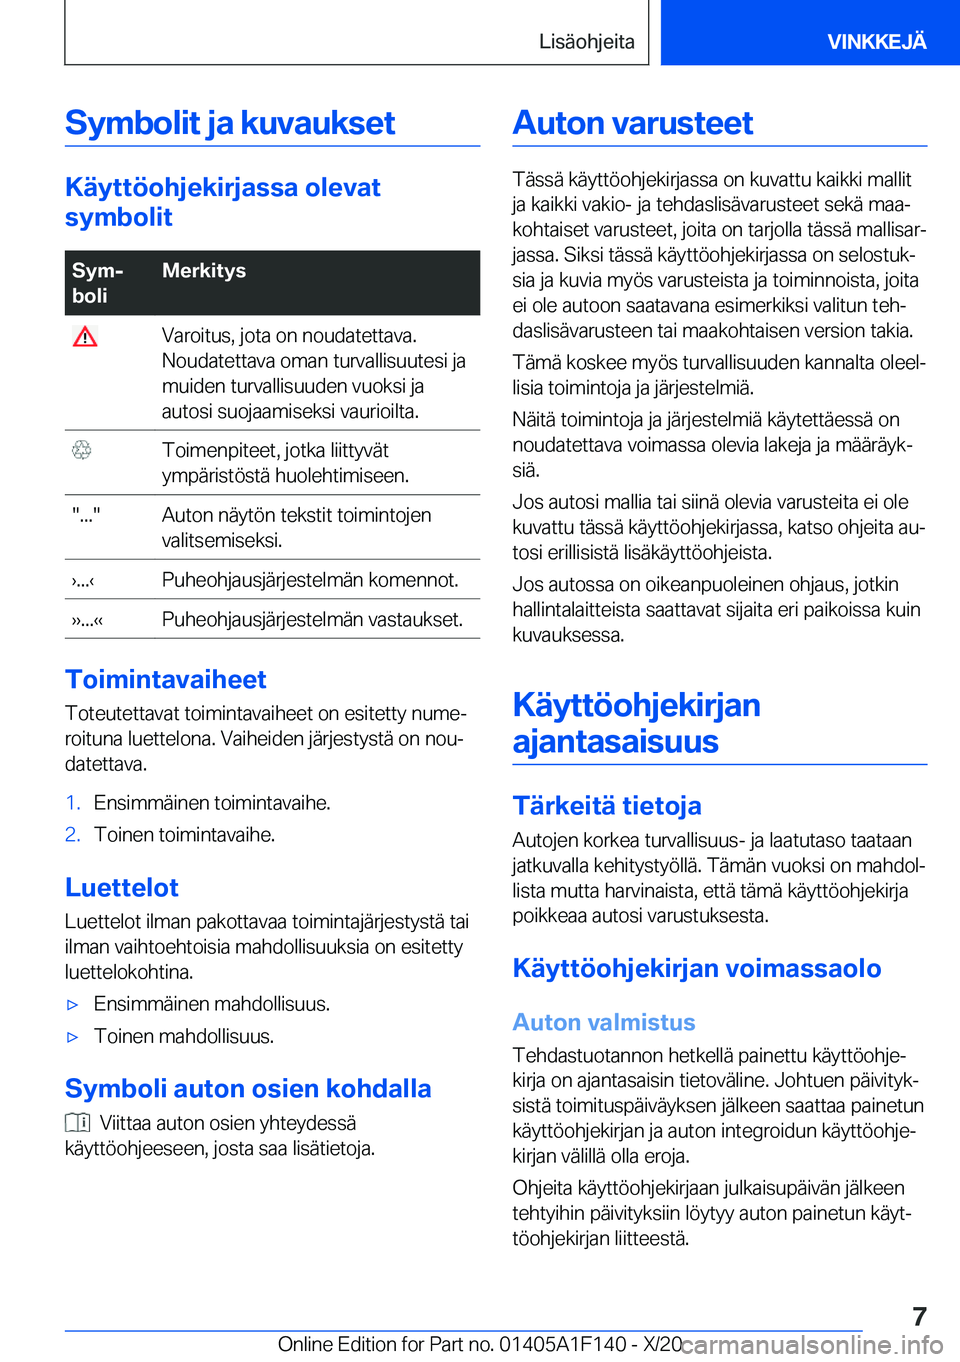 BMW X6 2021  Omistajan Käsikirja (in Finnish) �S�y�m�b�o�l�i�t��j�a��k�u�v�a�u�k�s�e�t
�K�